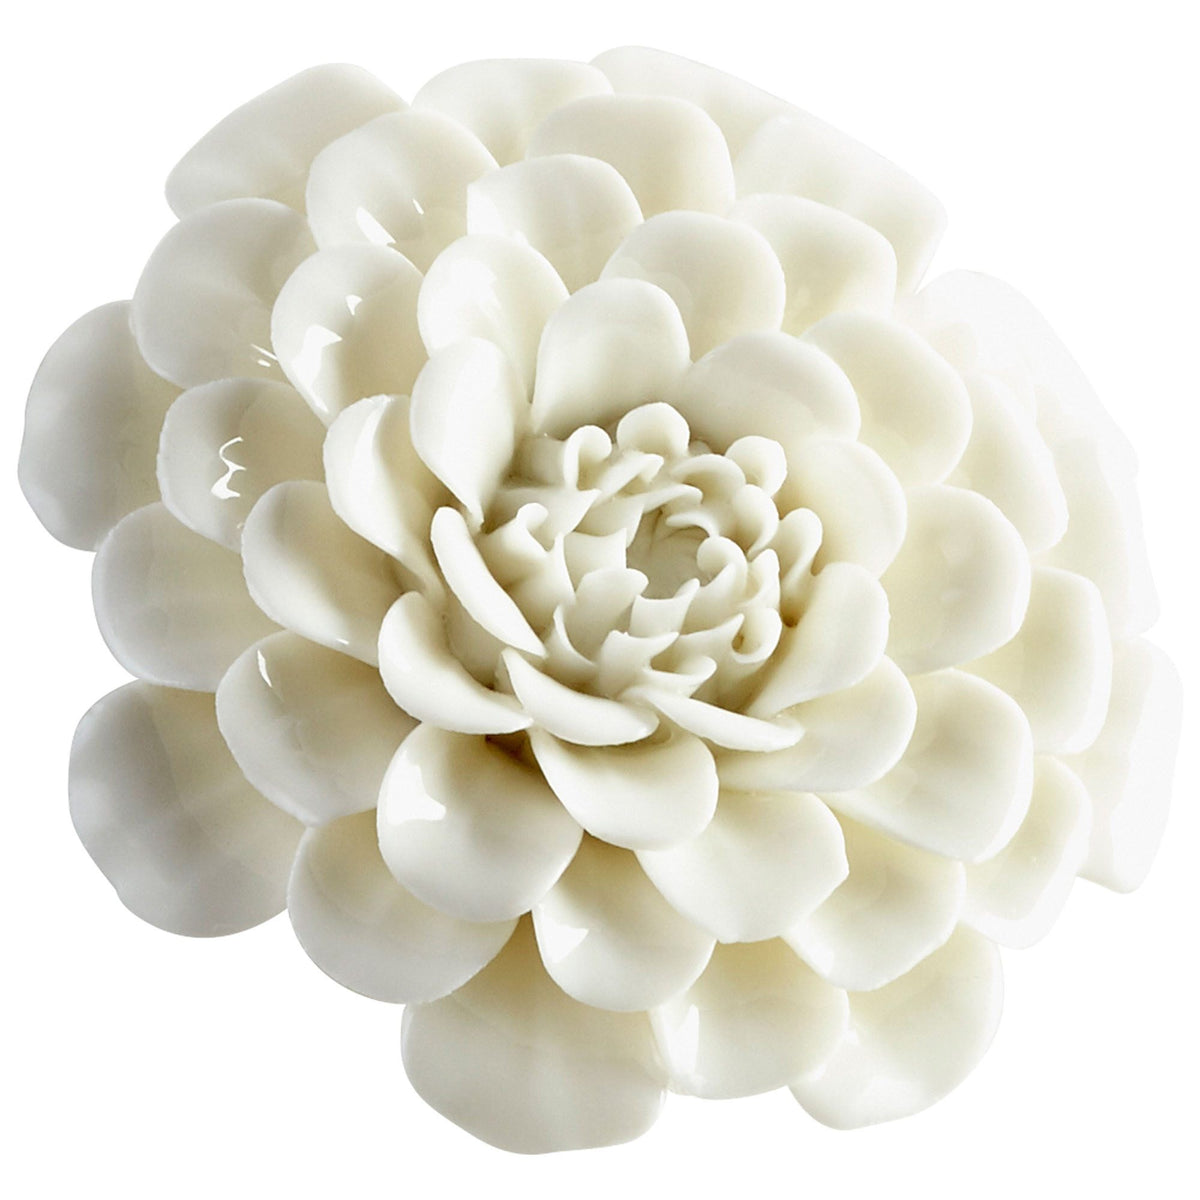 Flourishing Flowers - White